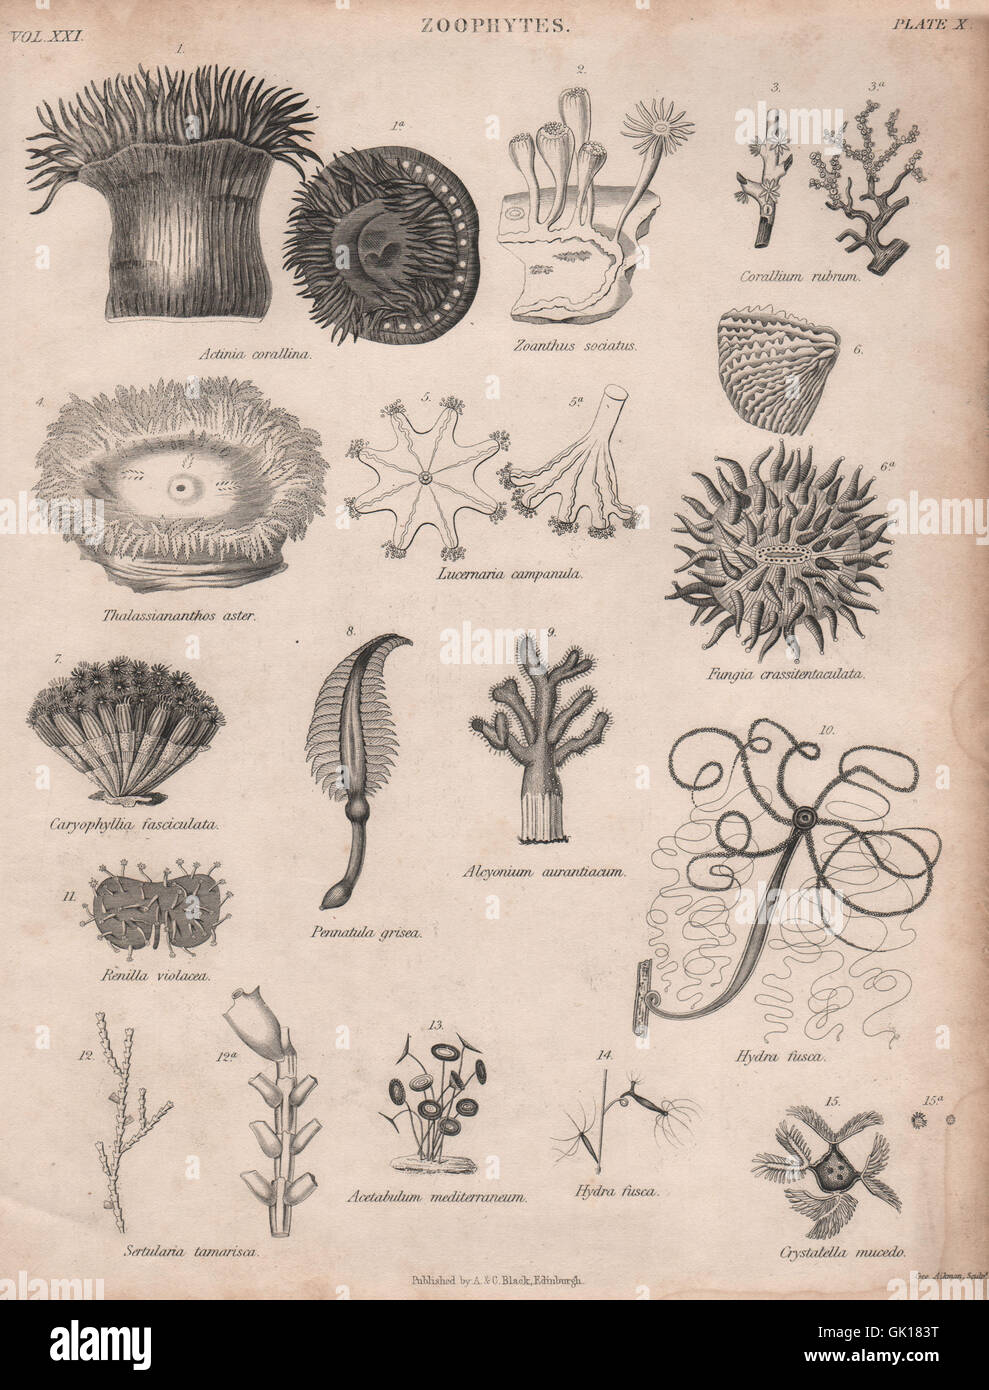 Zoophytes. Actinia corallina. Zoanthus sociatus. Corallium rubrum, imprimer 1860 Banque D'Images